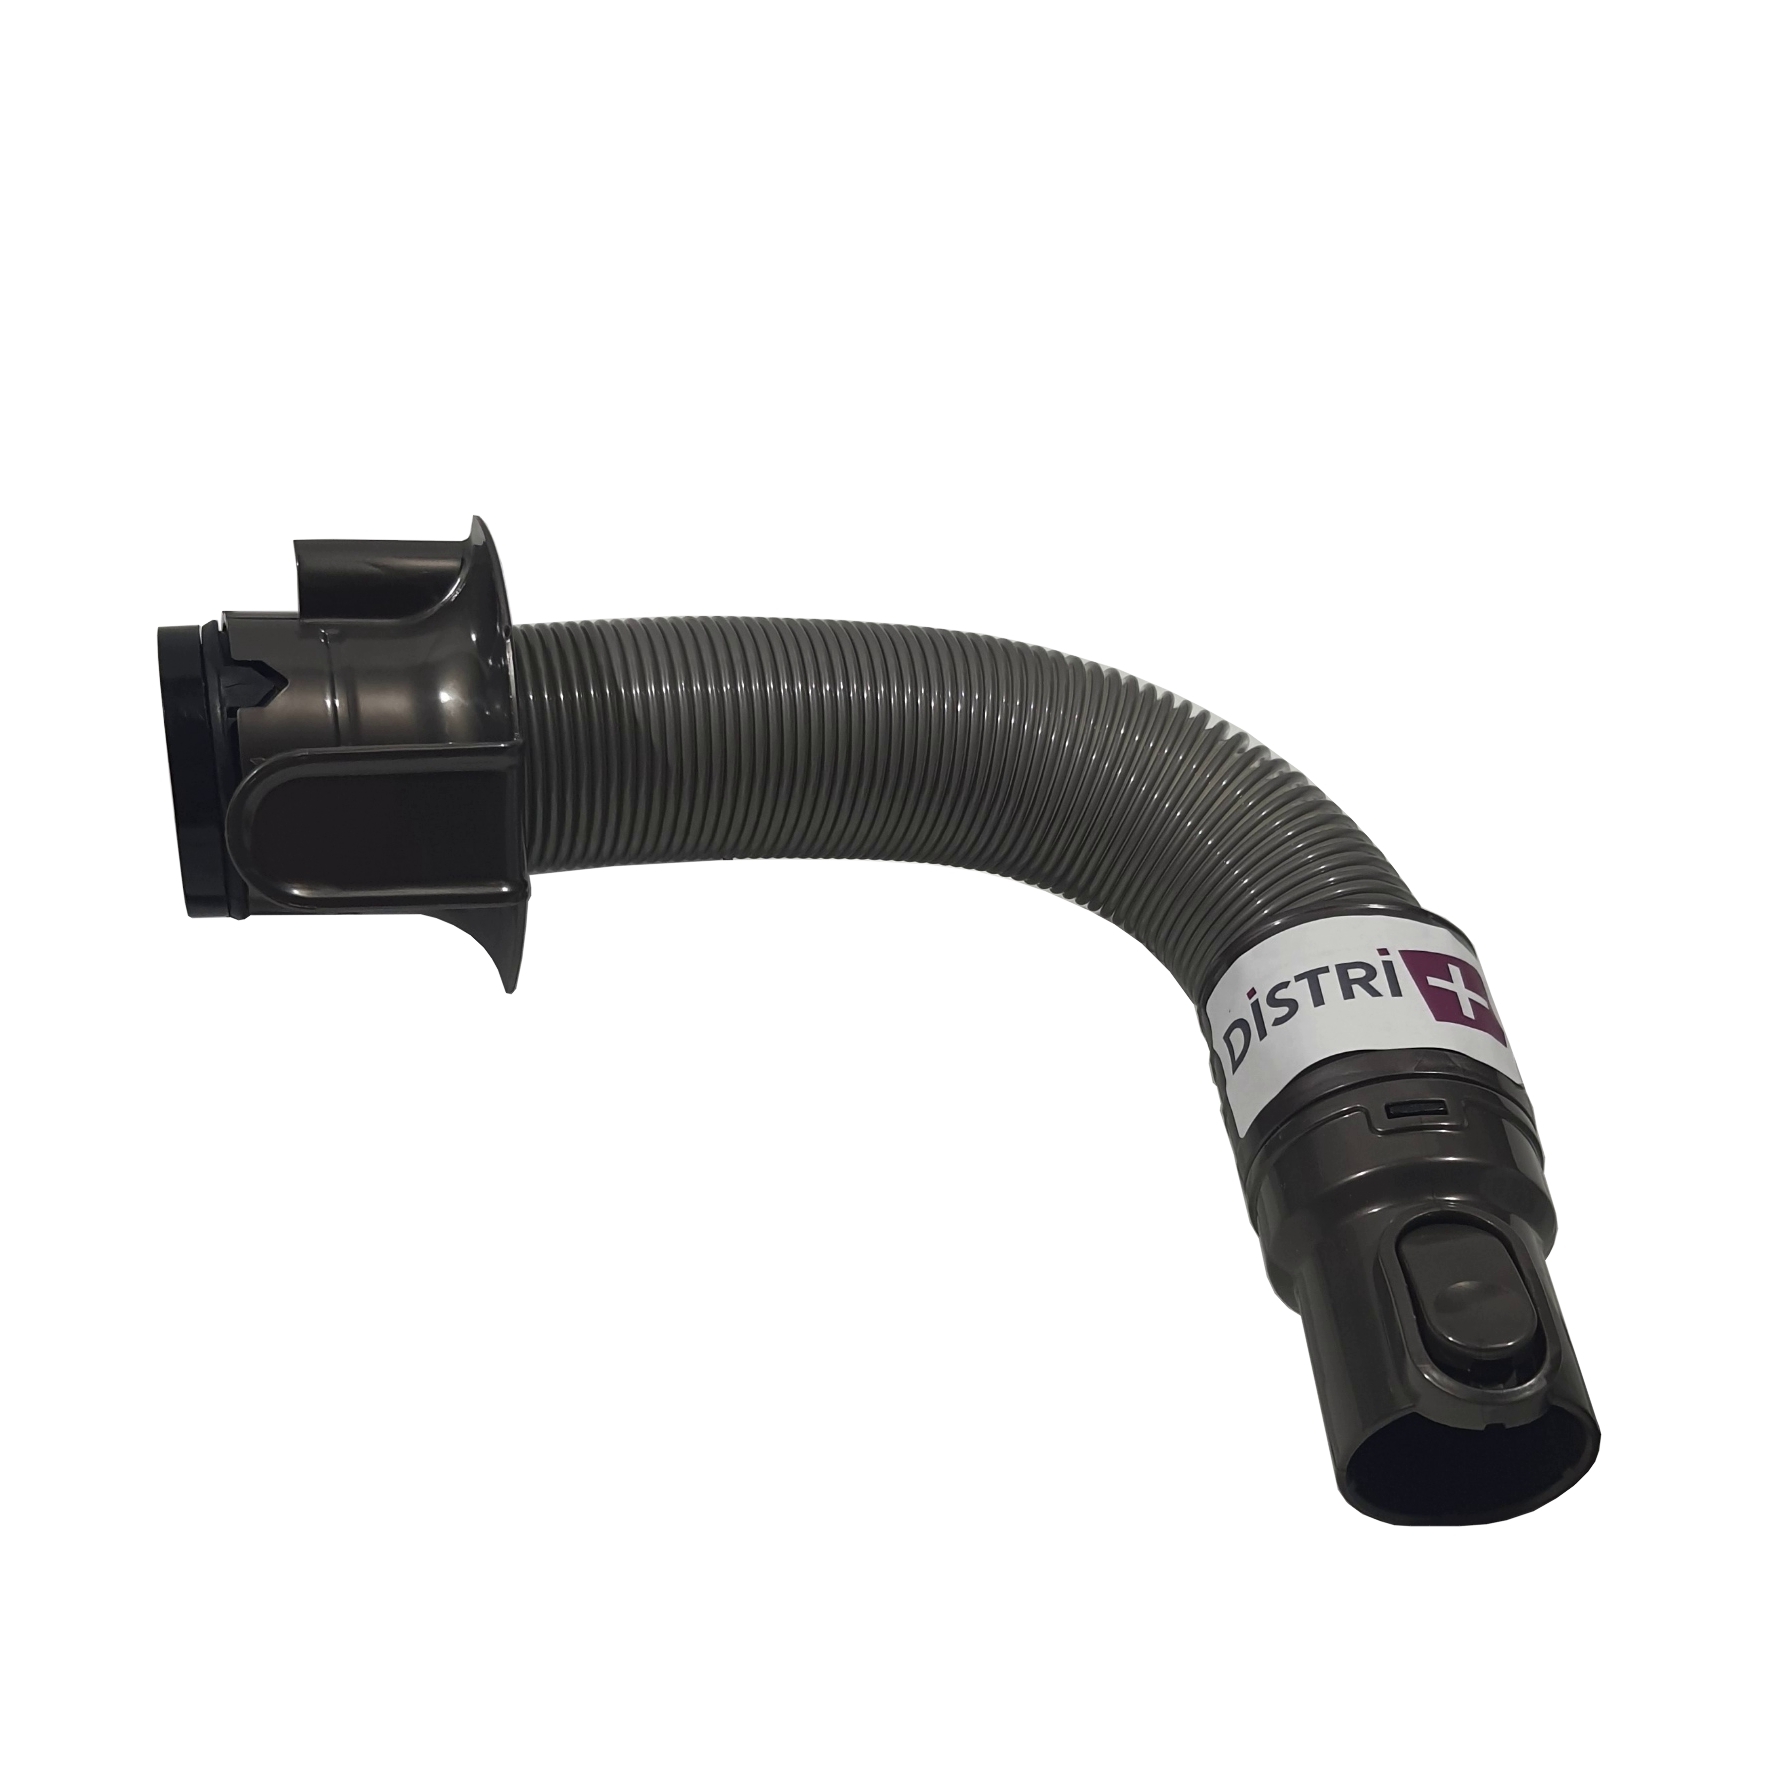 Flexible complet compatible à extension rapide pour aspirateur Dyson DC24 (914702-01)